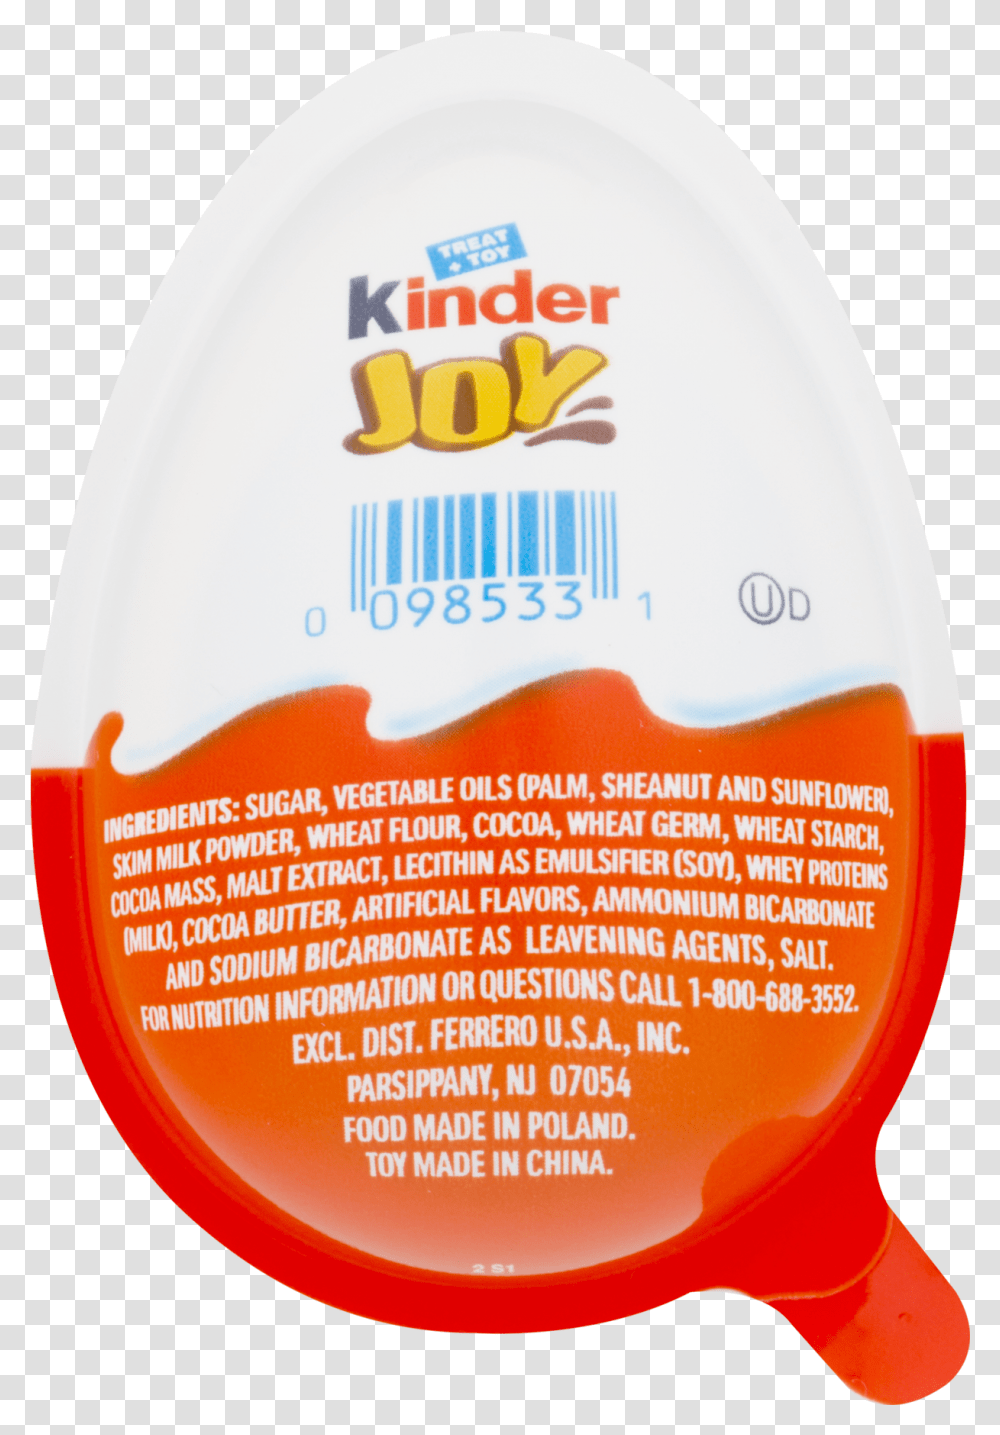 Kinder Joy Egg Nutrition Facts, Bottle, Label, Beer Transparent Png